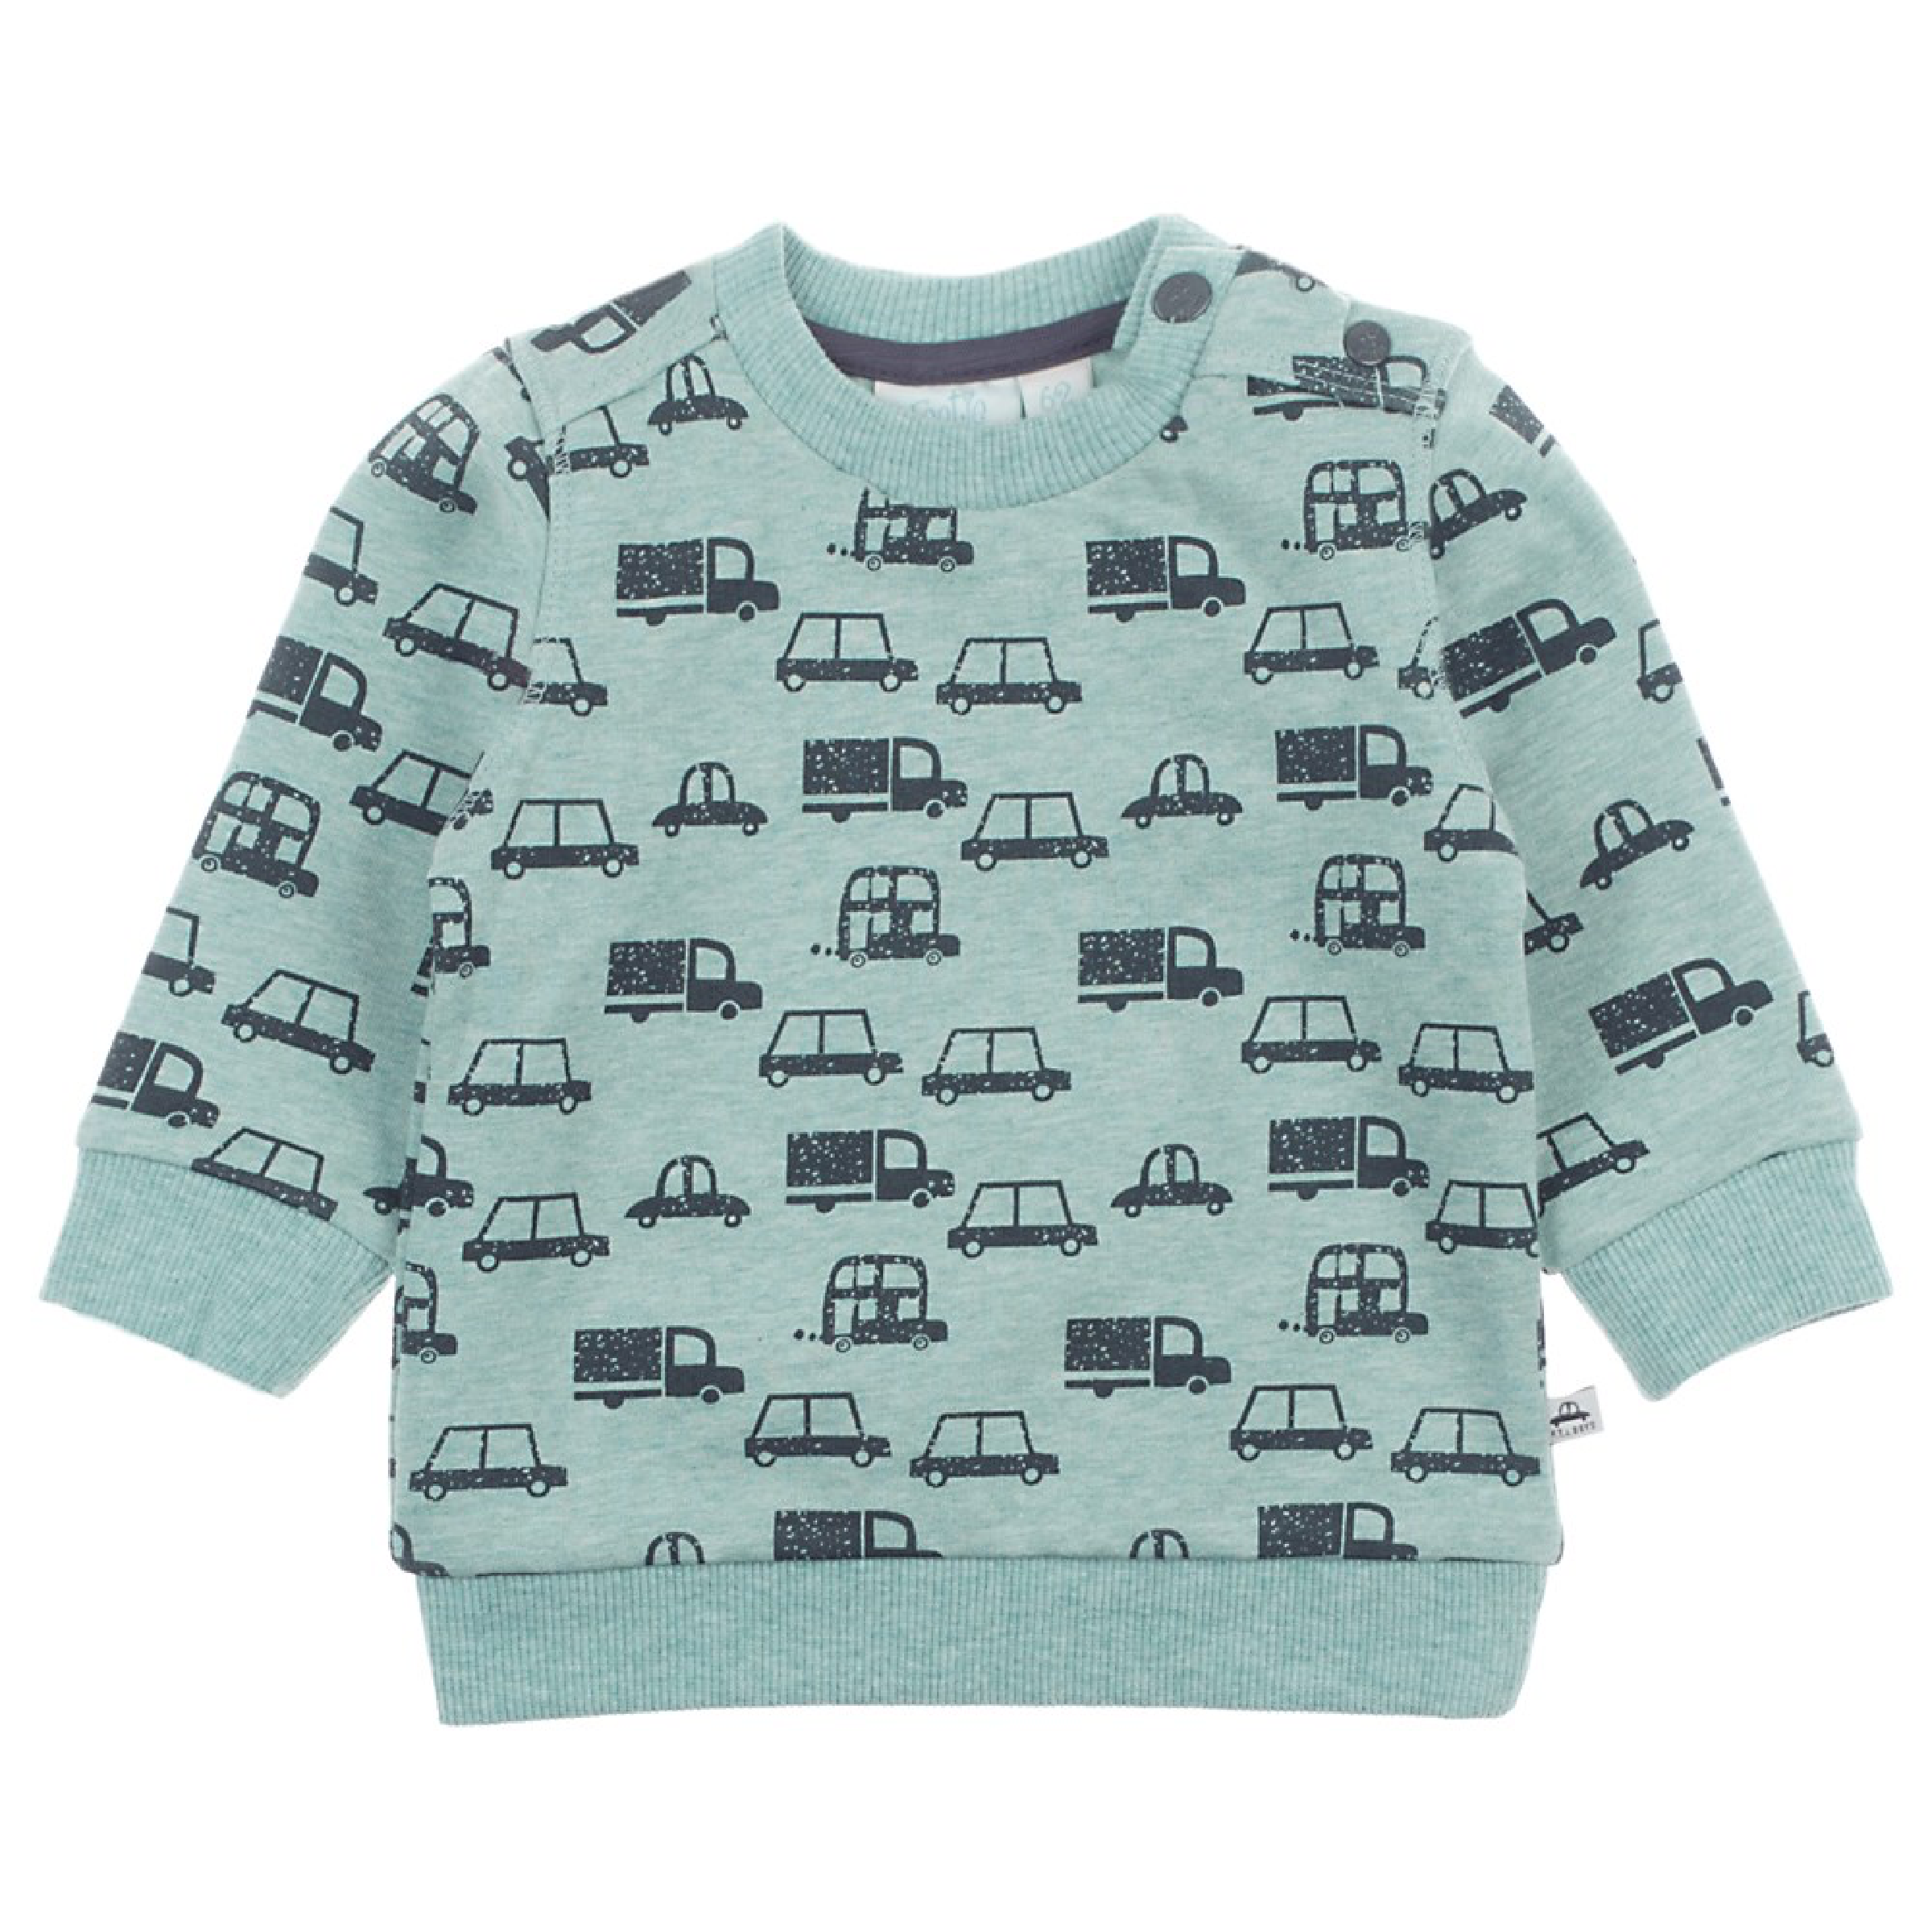 Jongens Sweater - Cars van Feetje in de kleur Mint melange in maat 68.